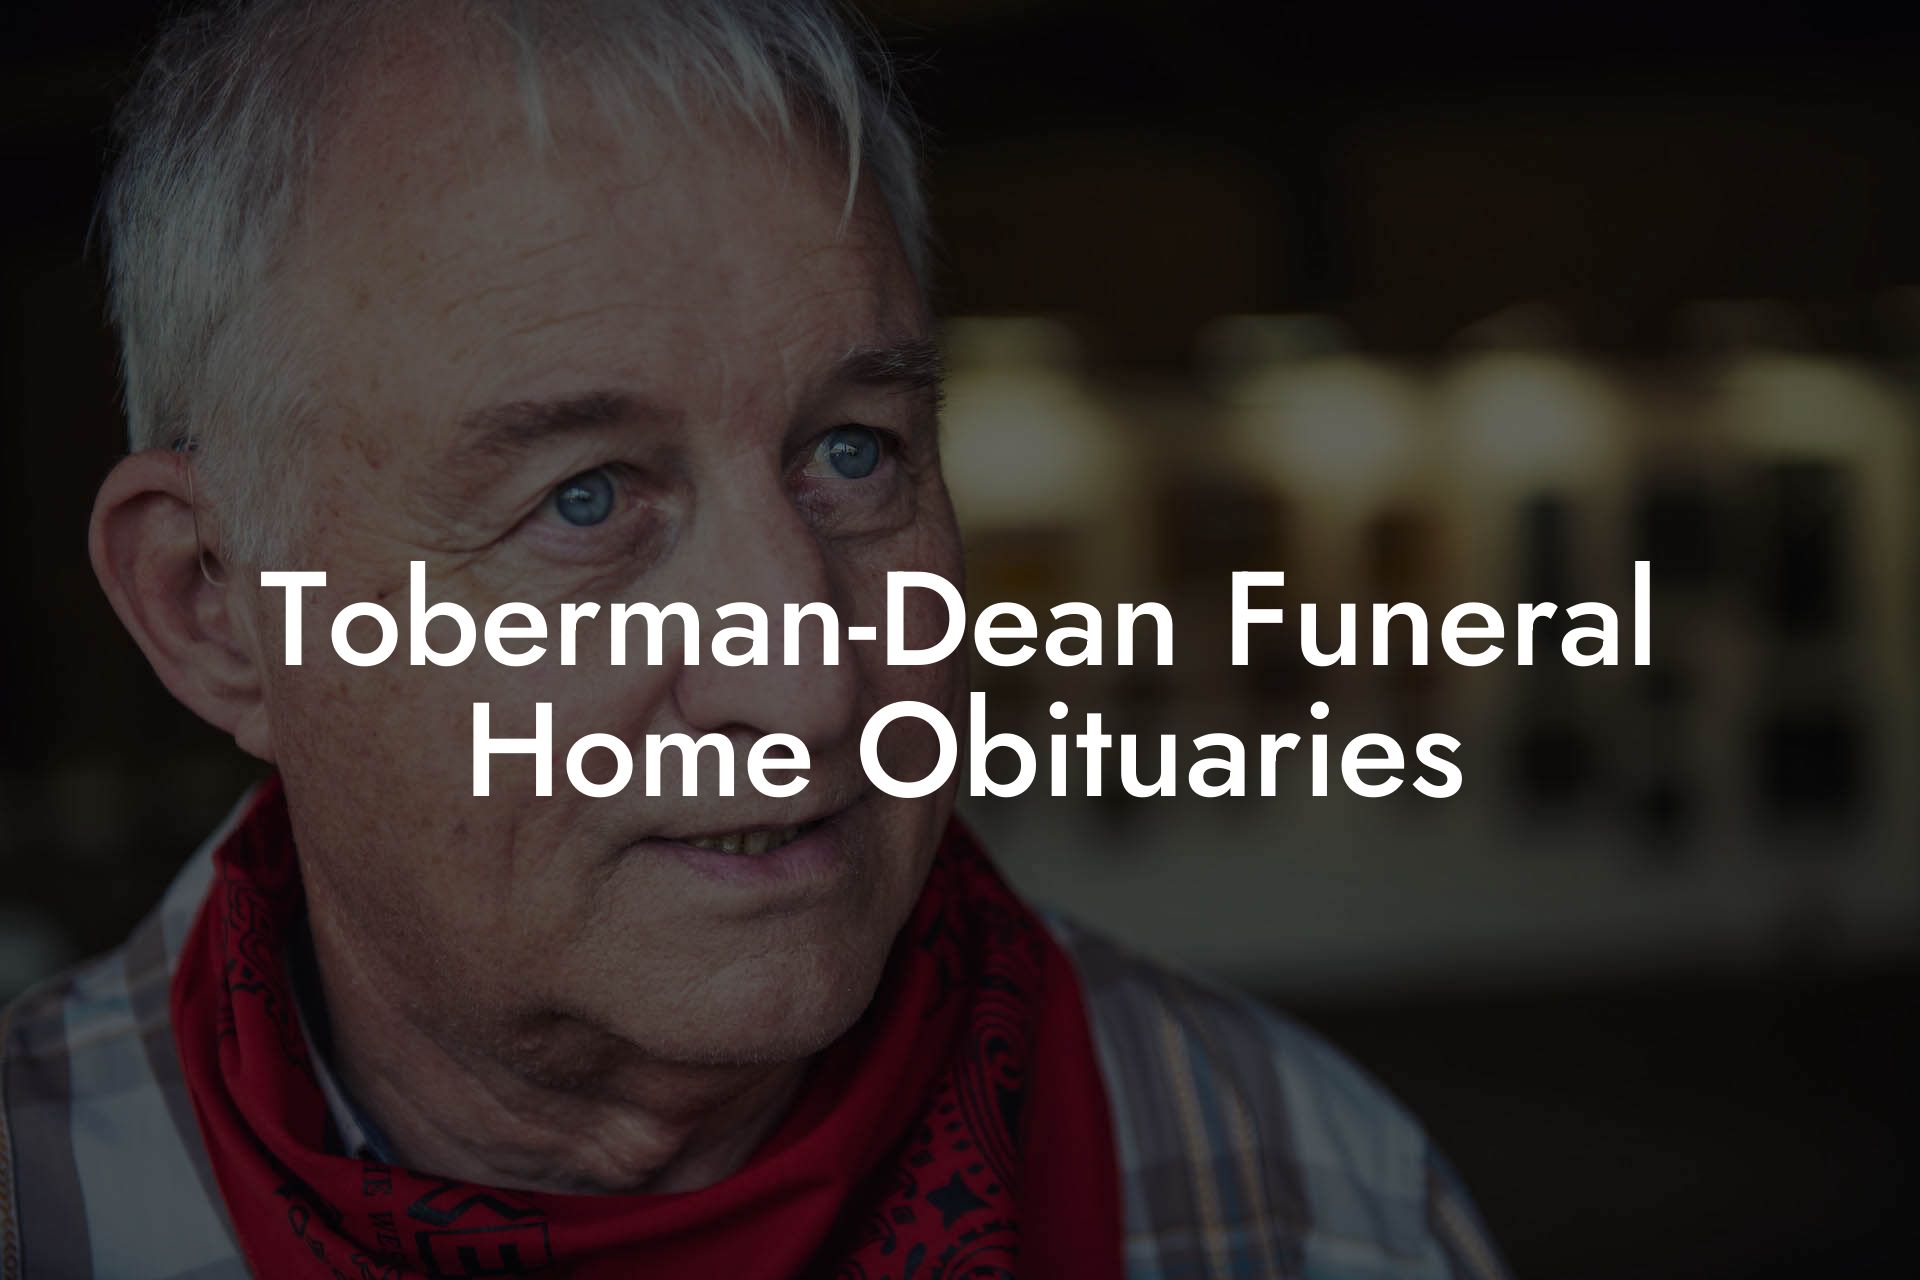 Toberman-Dean Funeral Home Obituaries